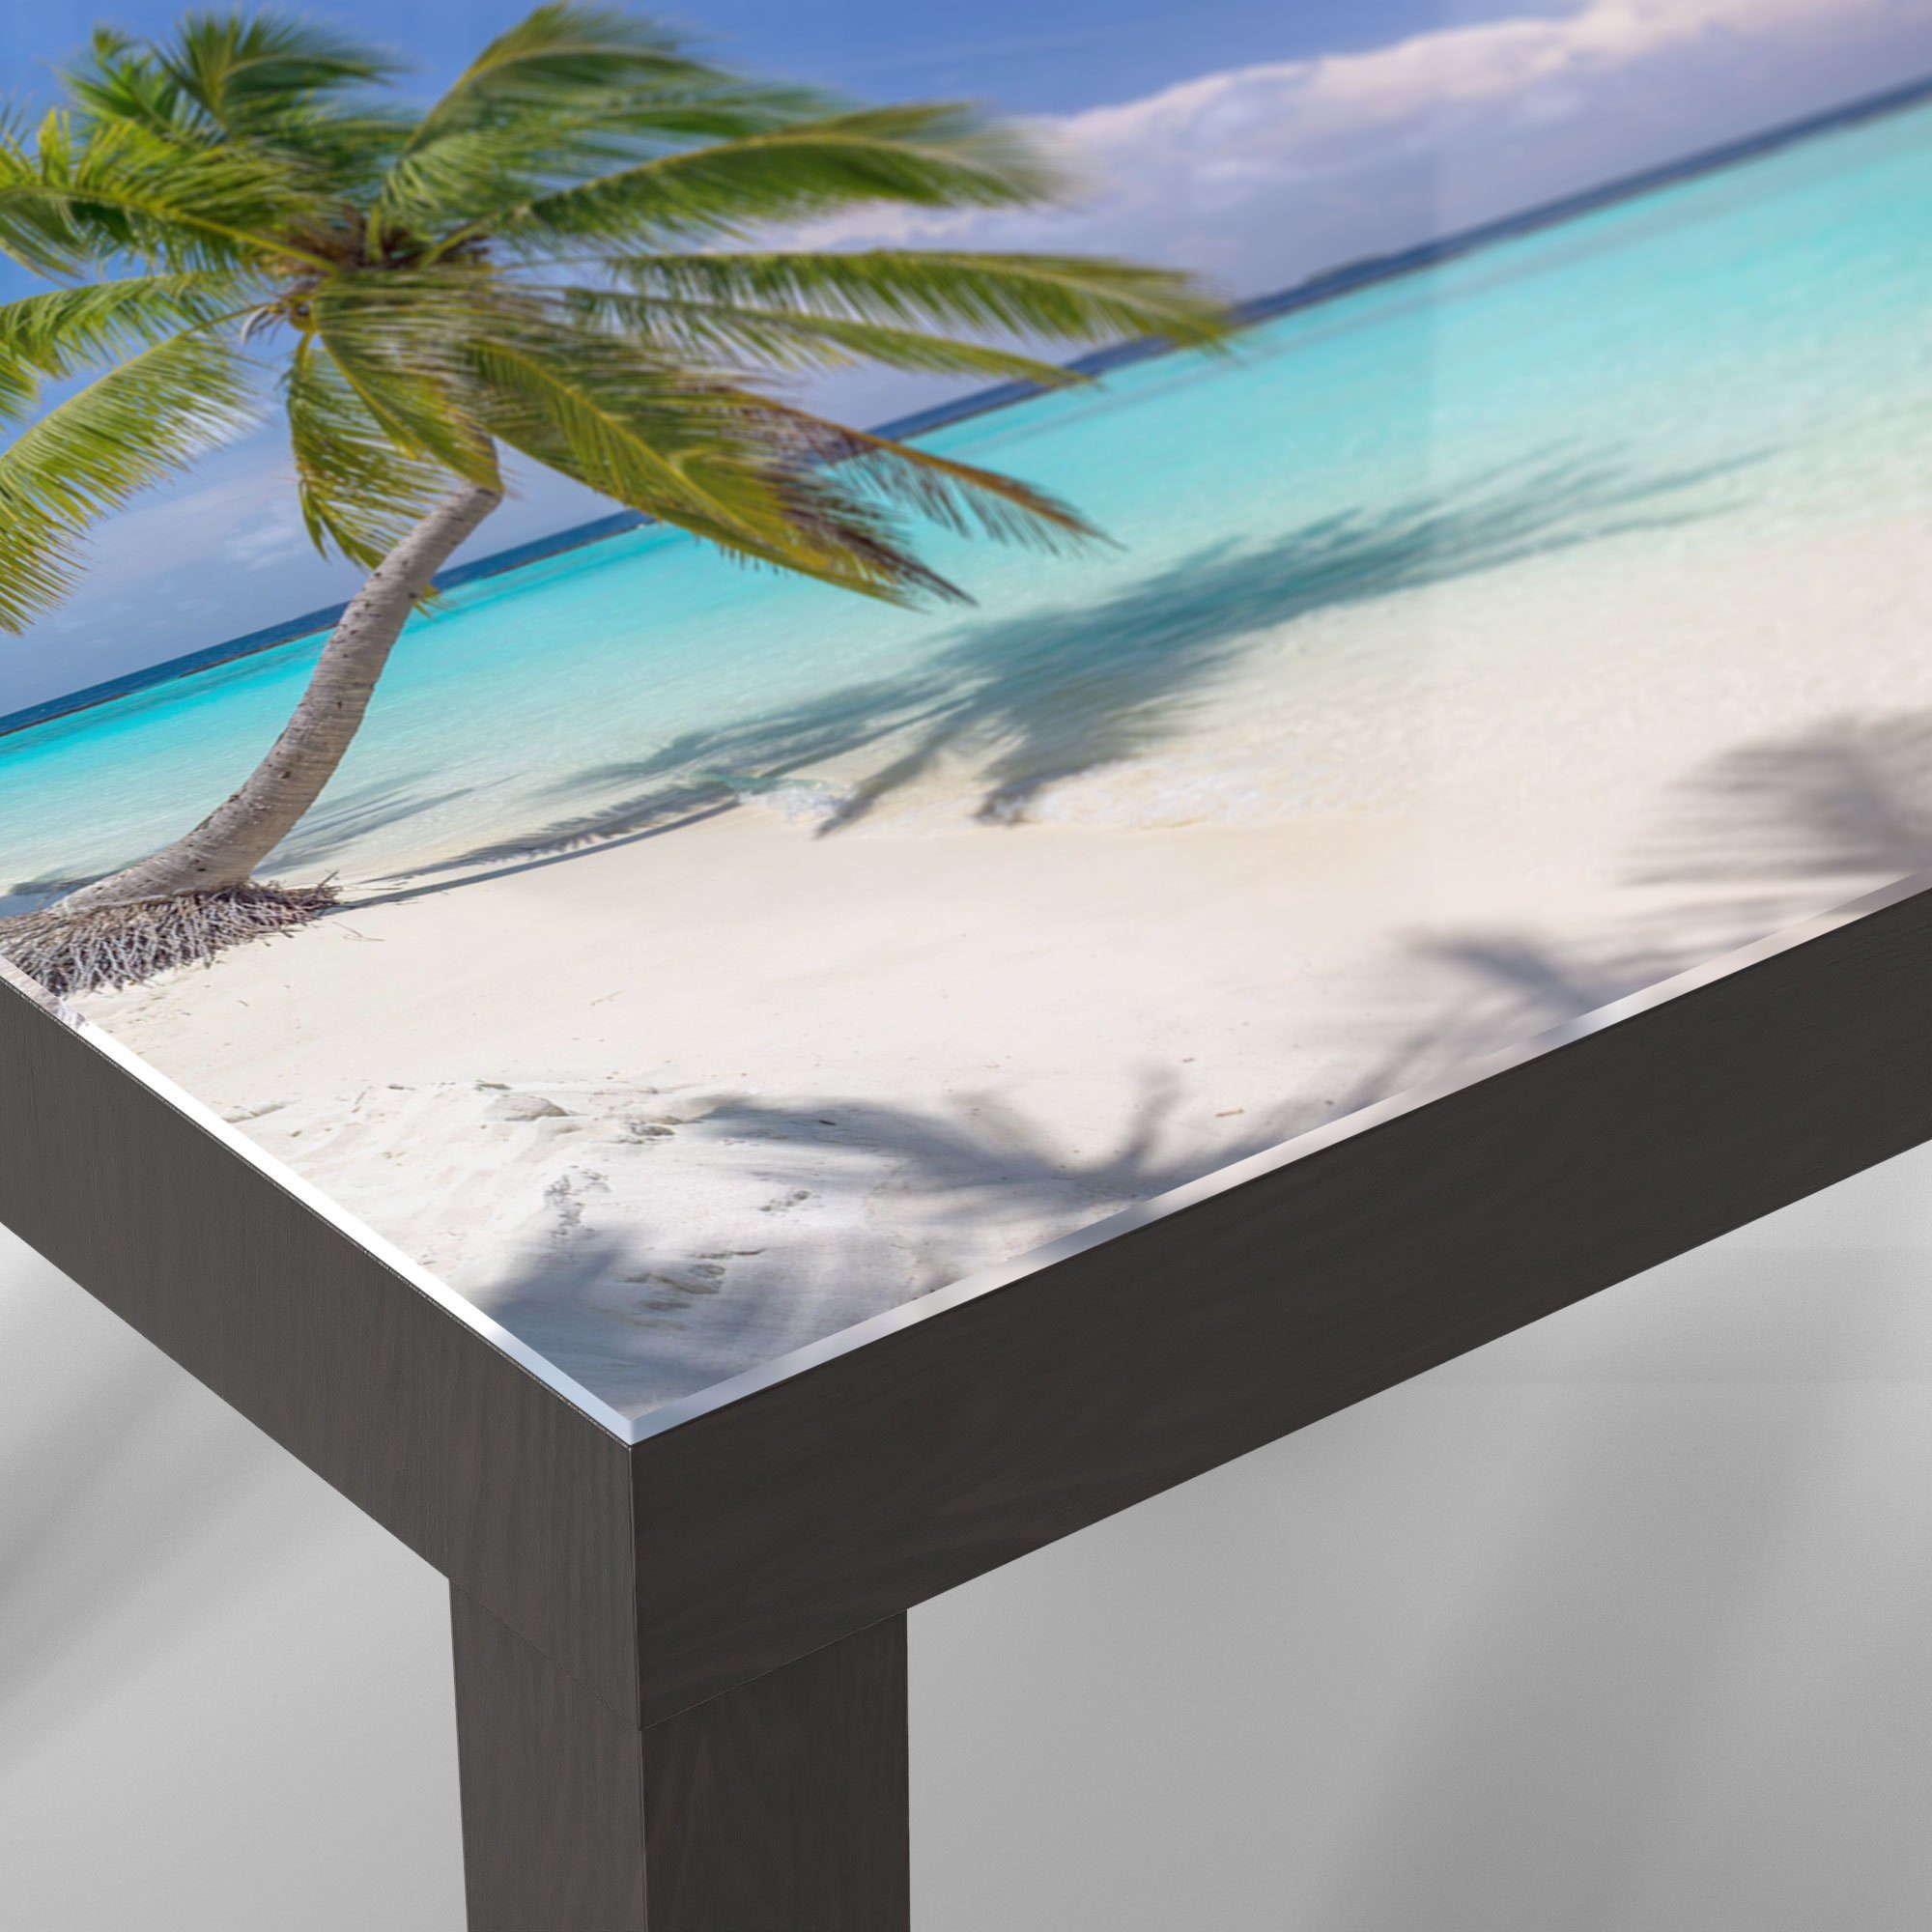 'Paradiesischer Glastisch Couchtisch Schwarz Strand', DEQORI Beistelltisch modern Glas